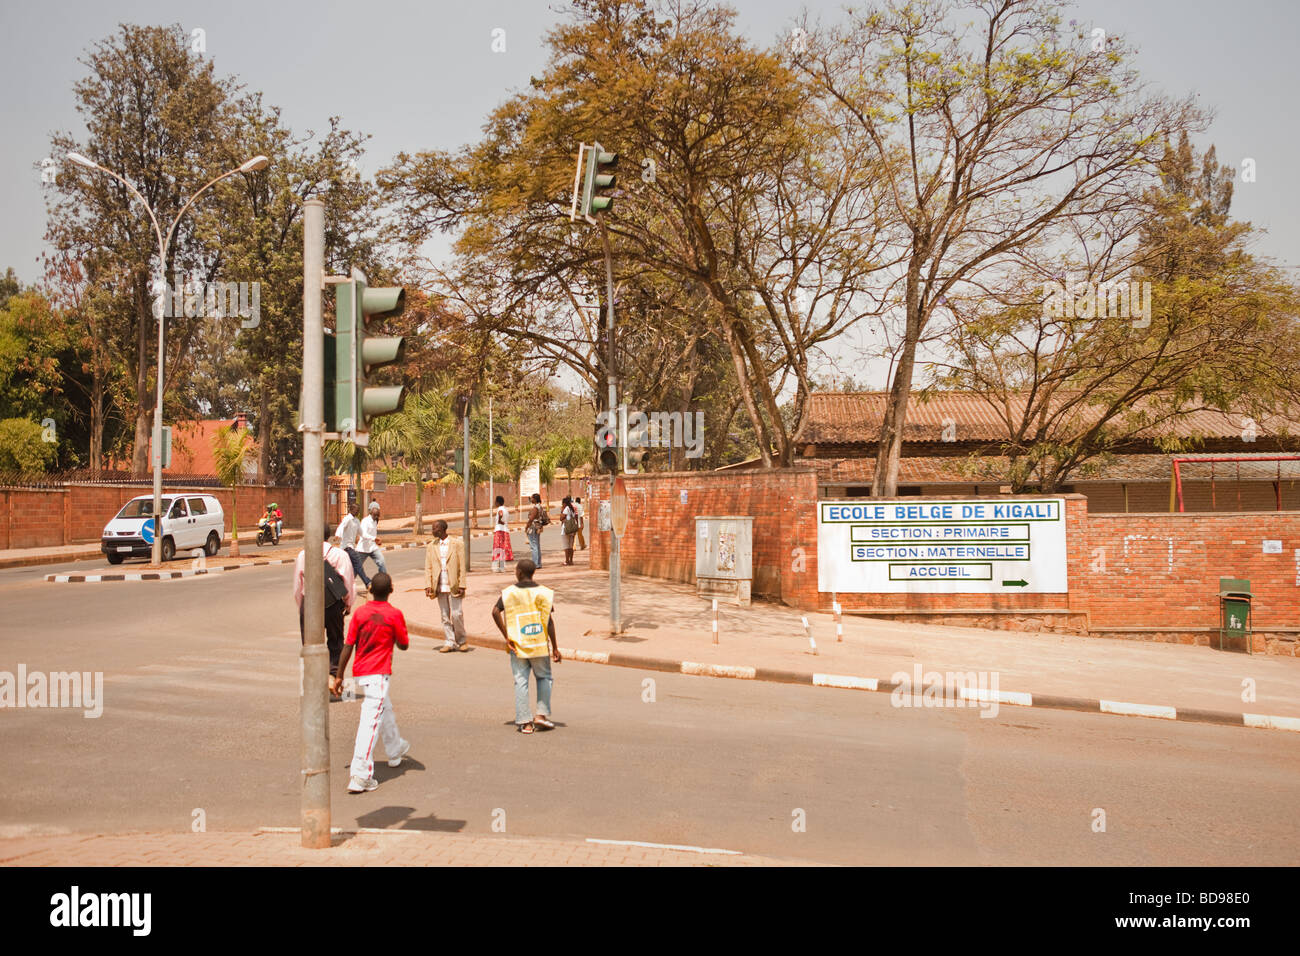 People walk by the Belgian School Ecole Belge de Kigali in downtown Kigali Rwanda Stock Photo